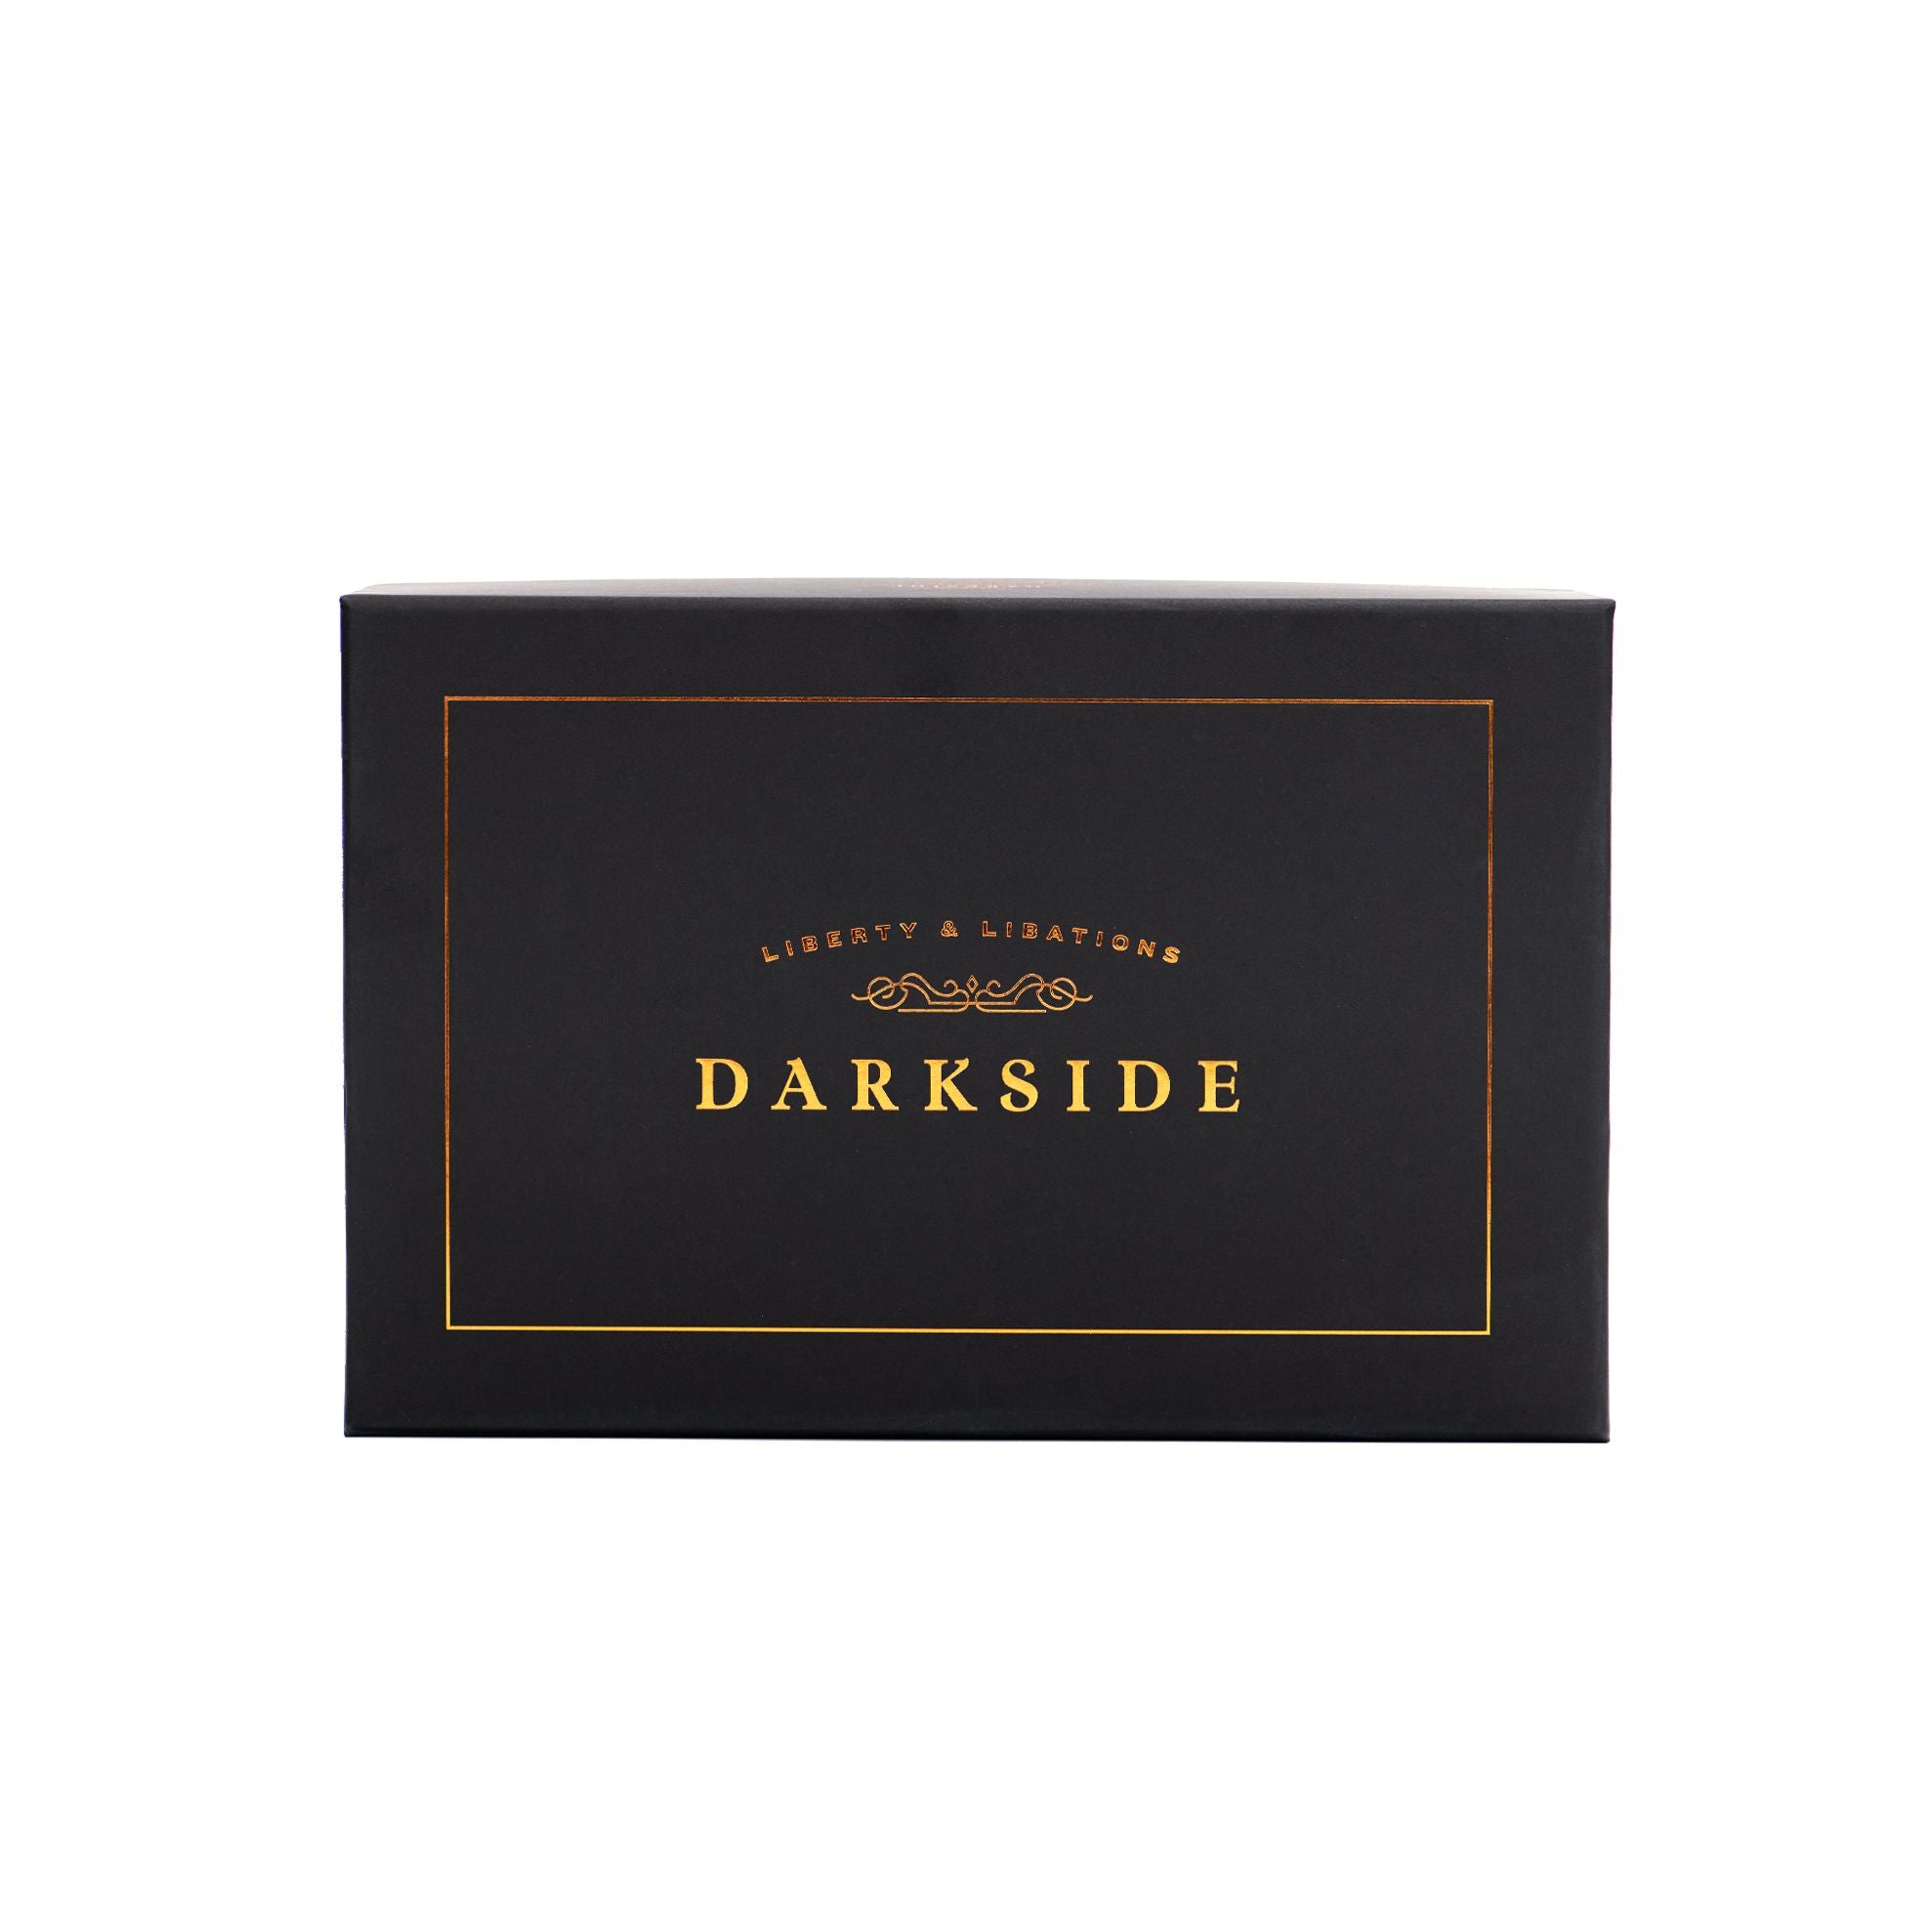 DarkSide Bar三合一雞尾酒套裝